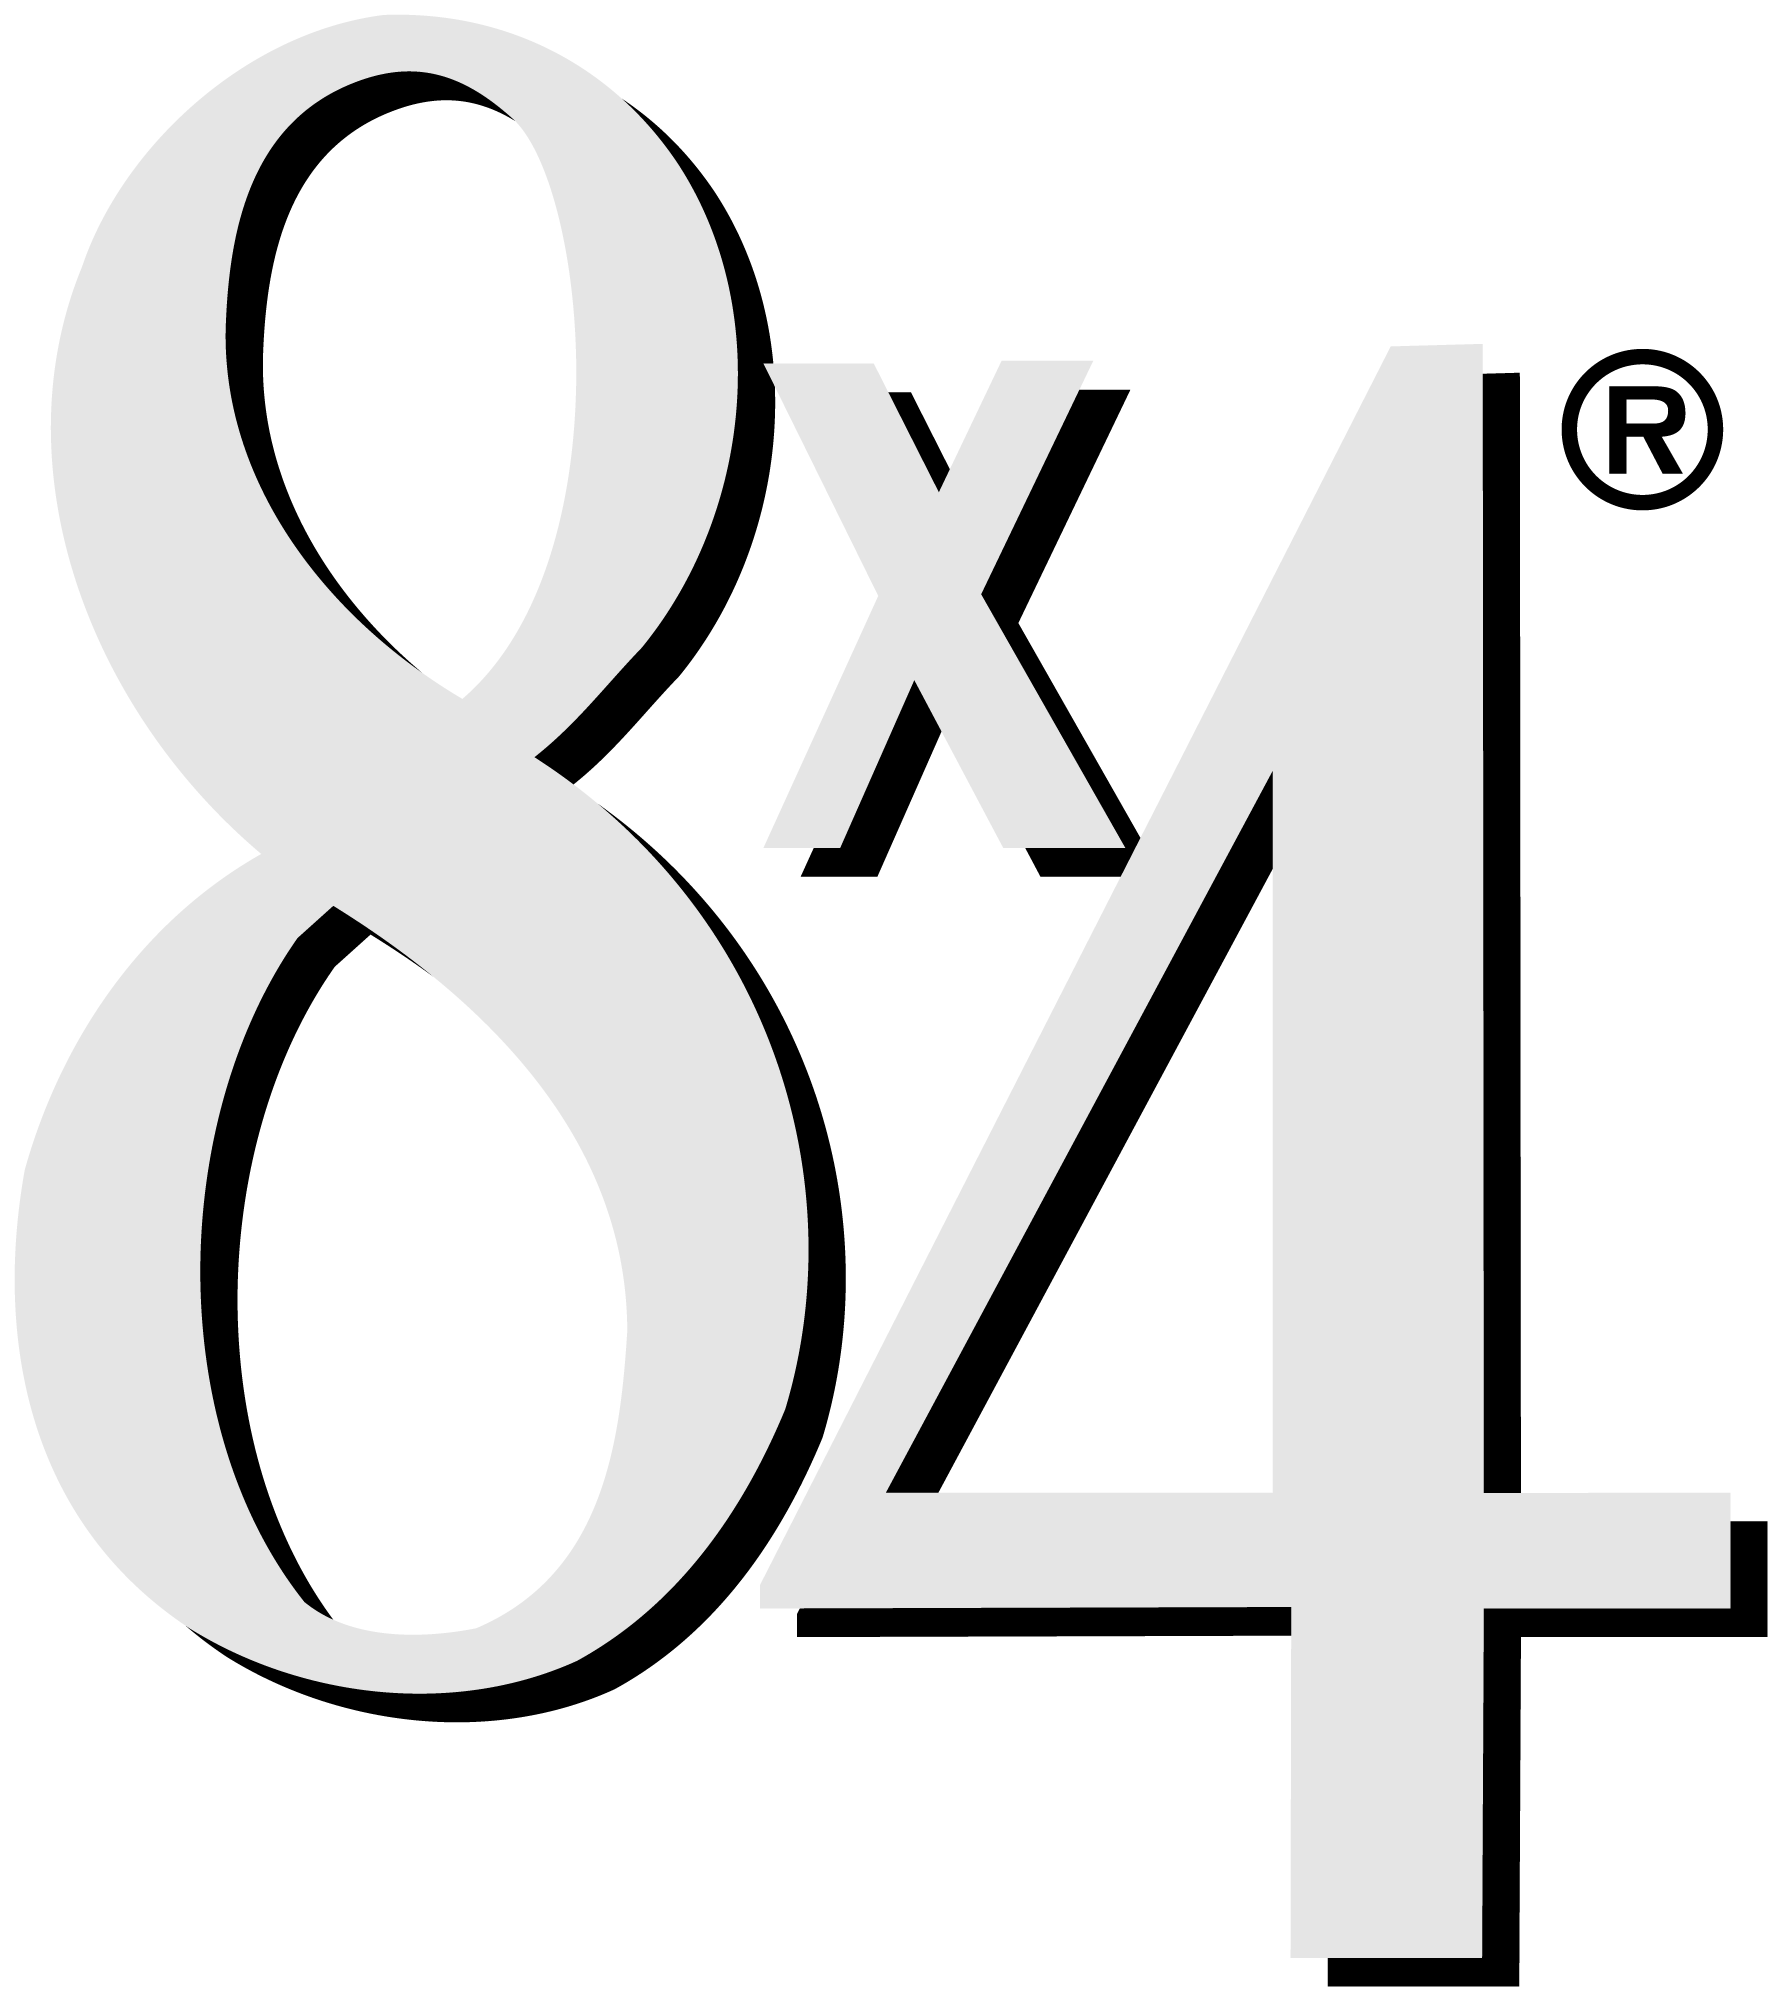 8x4